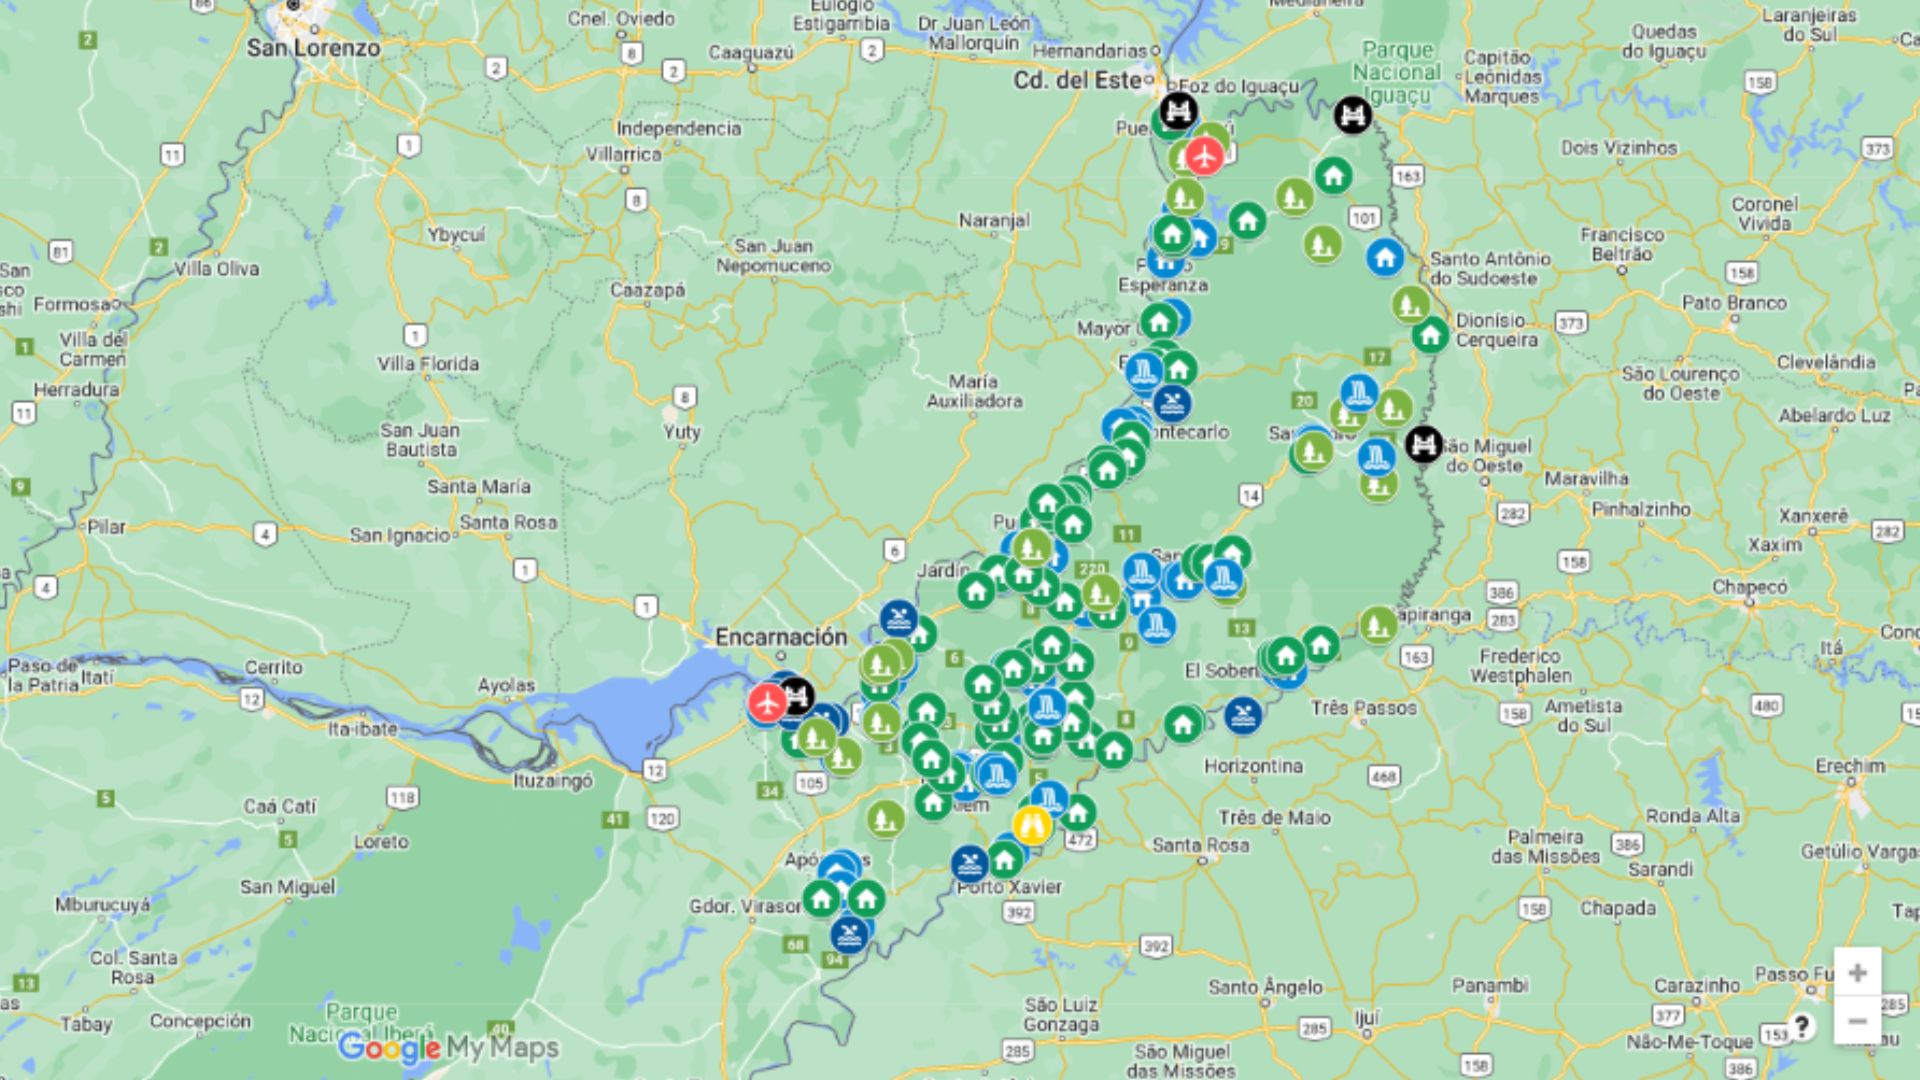 Mirá El Mapa Interactivo Con Más De 180 Destinos Para Acampar Visitar Y Disfrutar De Las 7134